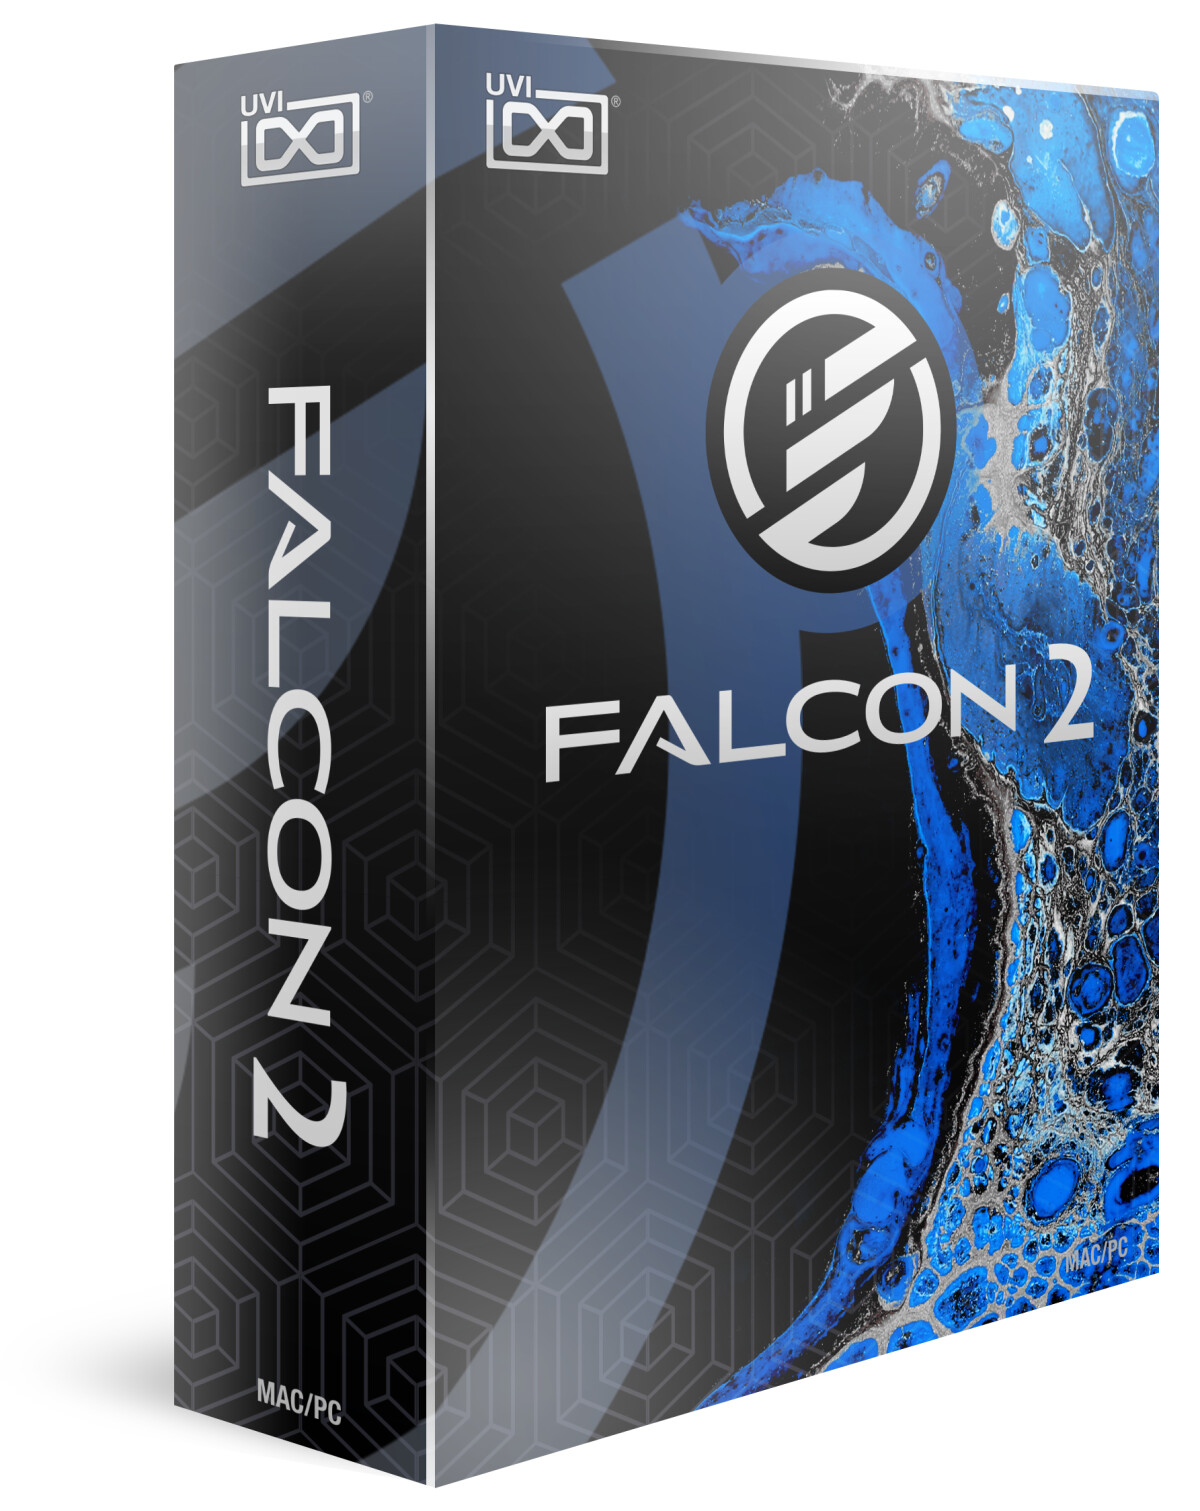 UVI met à jour Falcon à la version 2.1